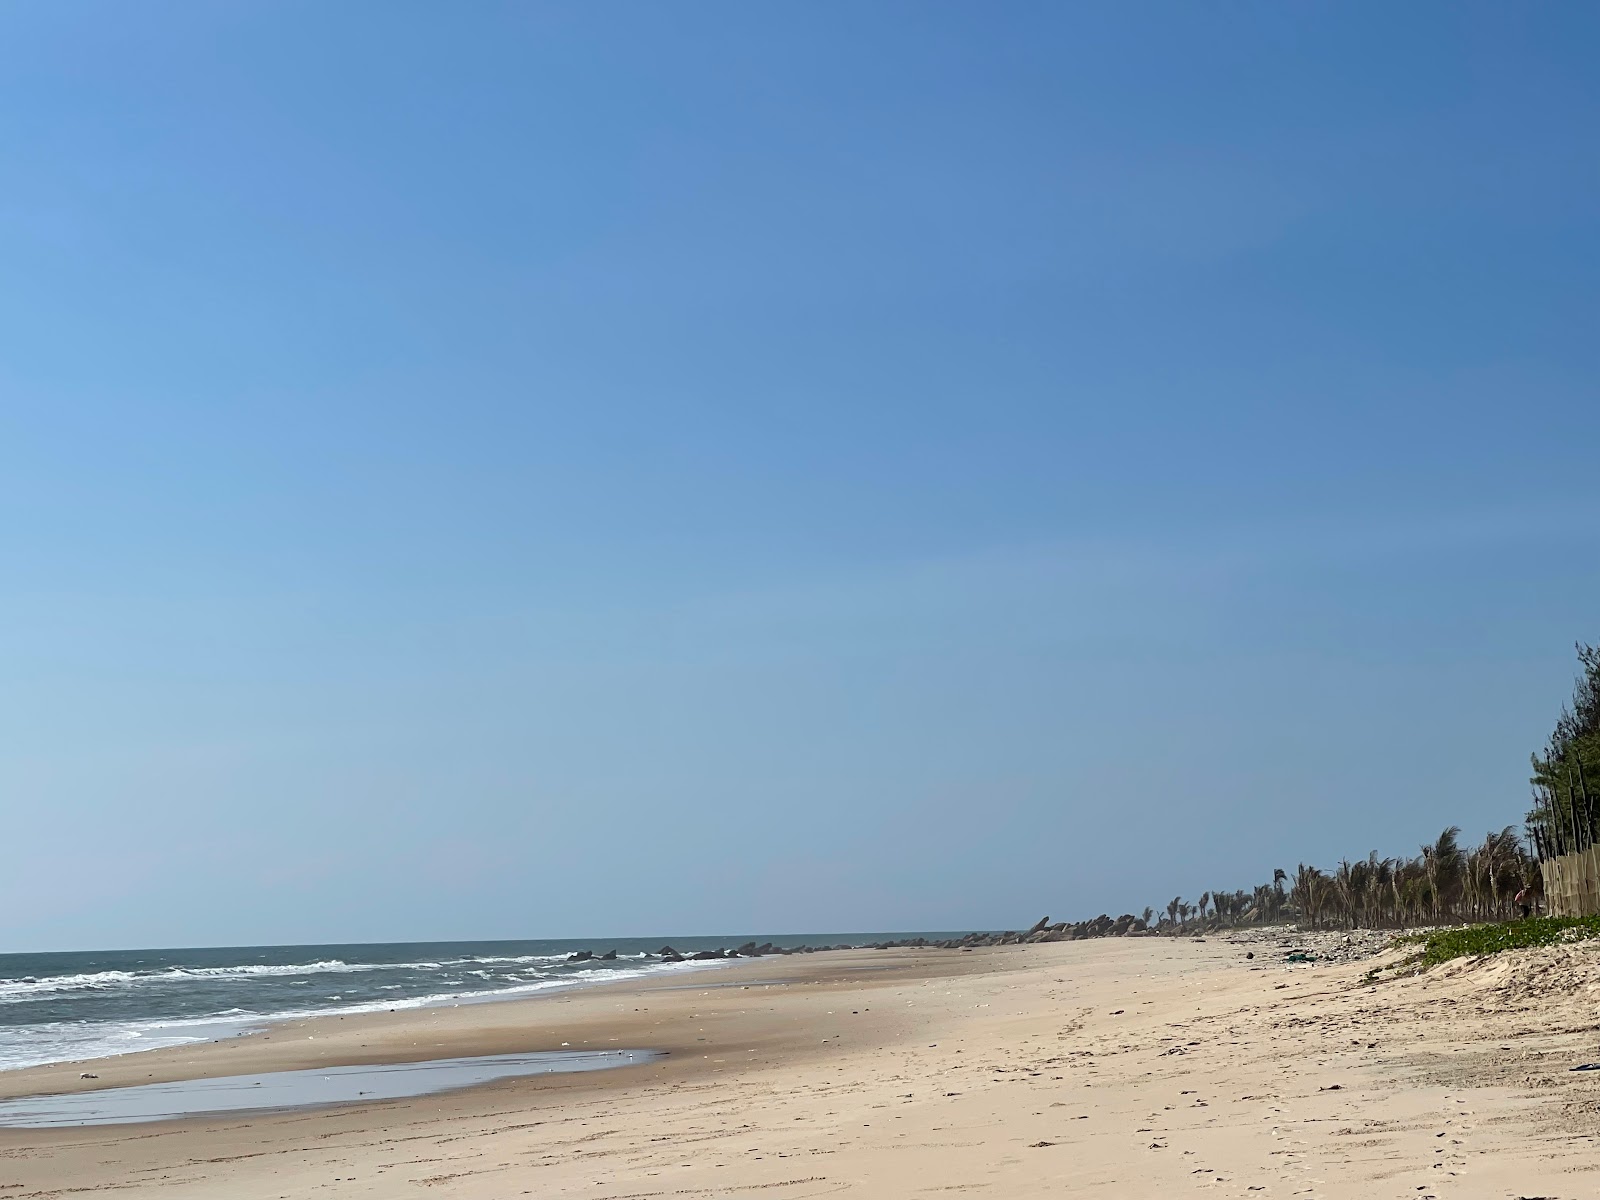 Fotografija Pho Hien beach priljubljeno mesto med poznavalci sprostitve